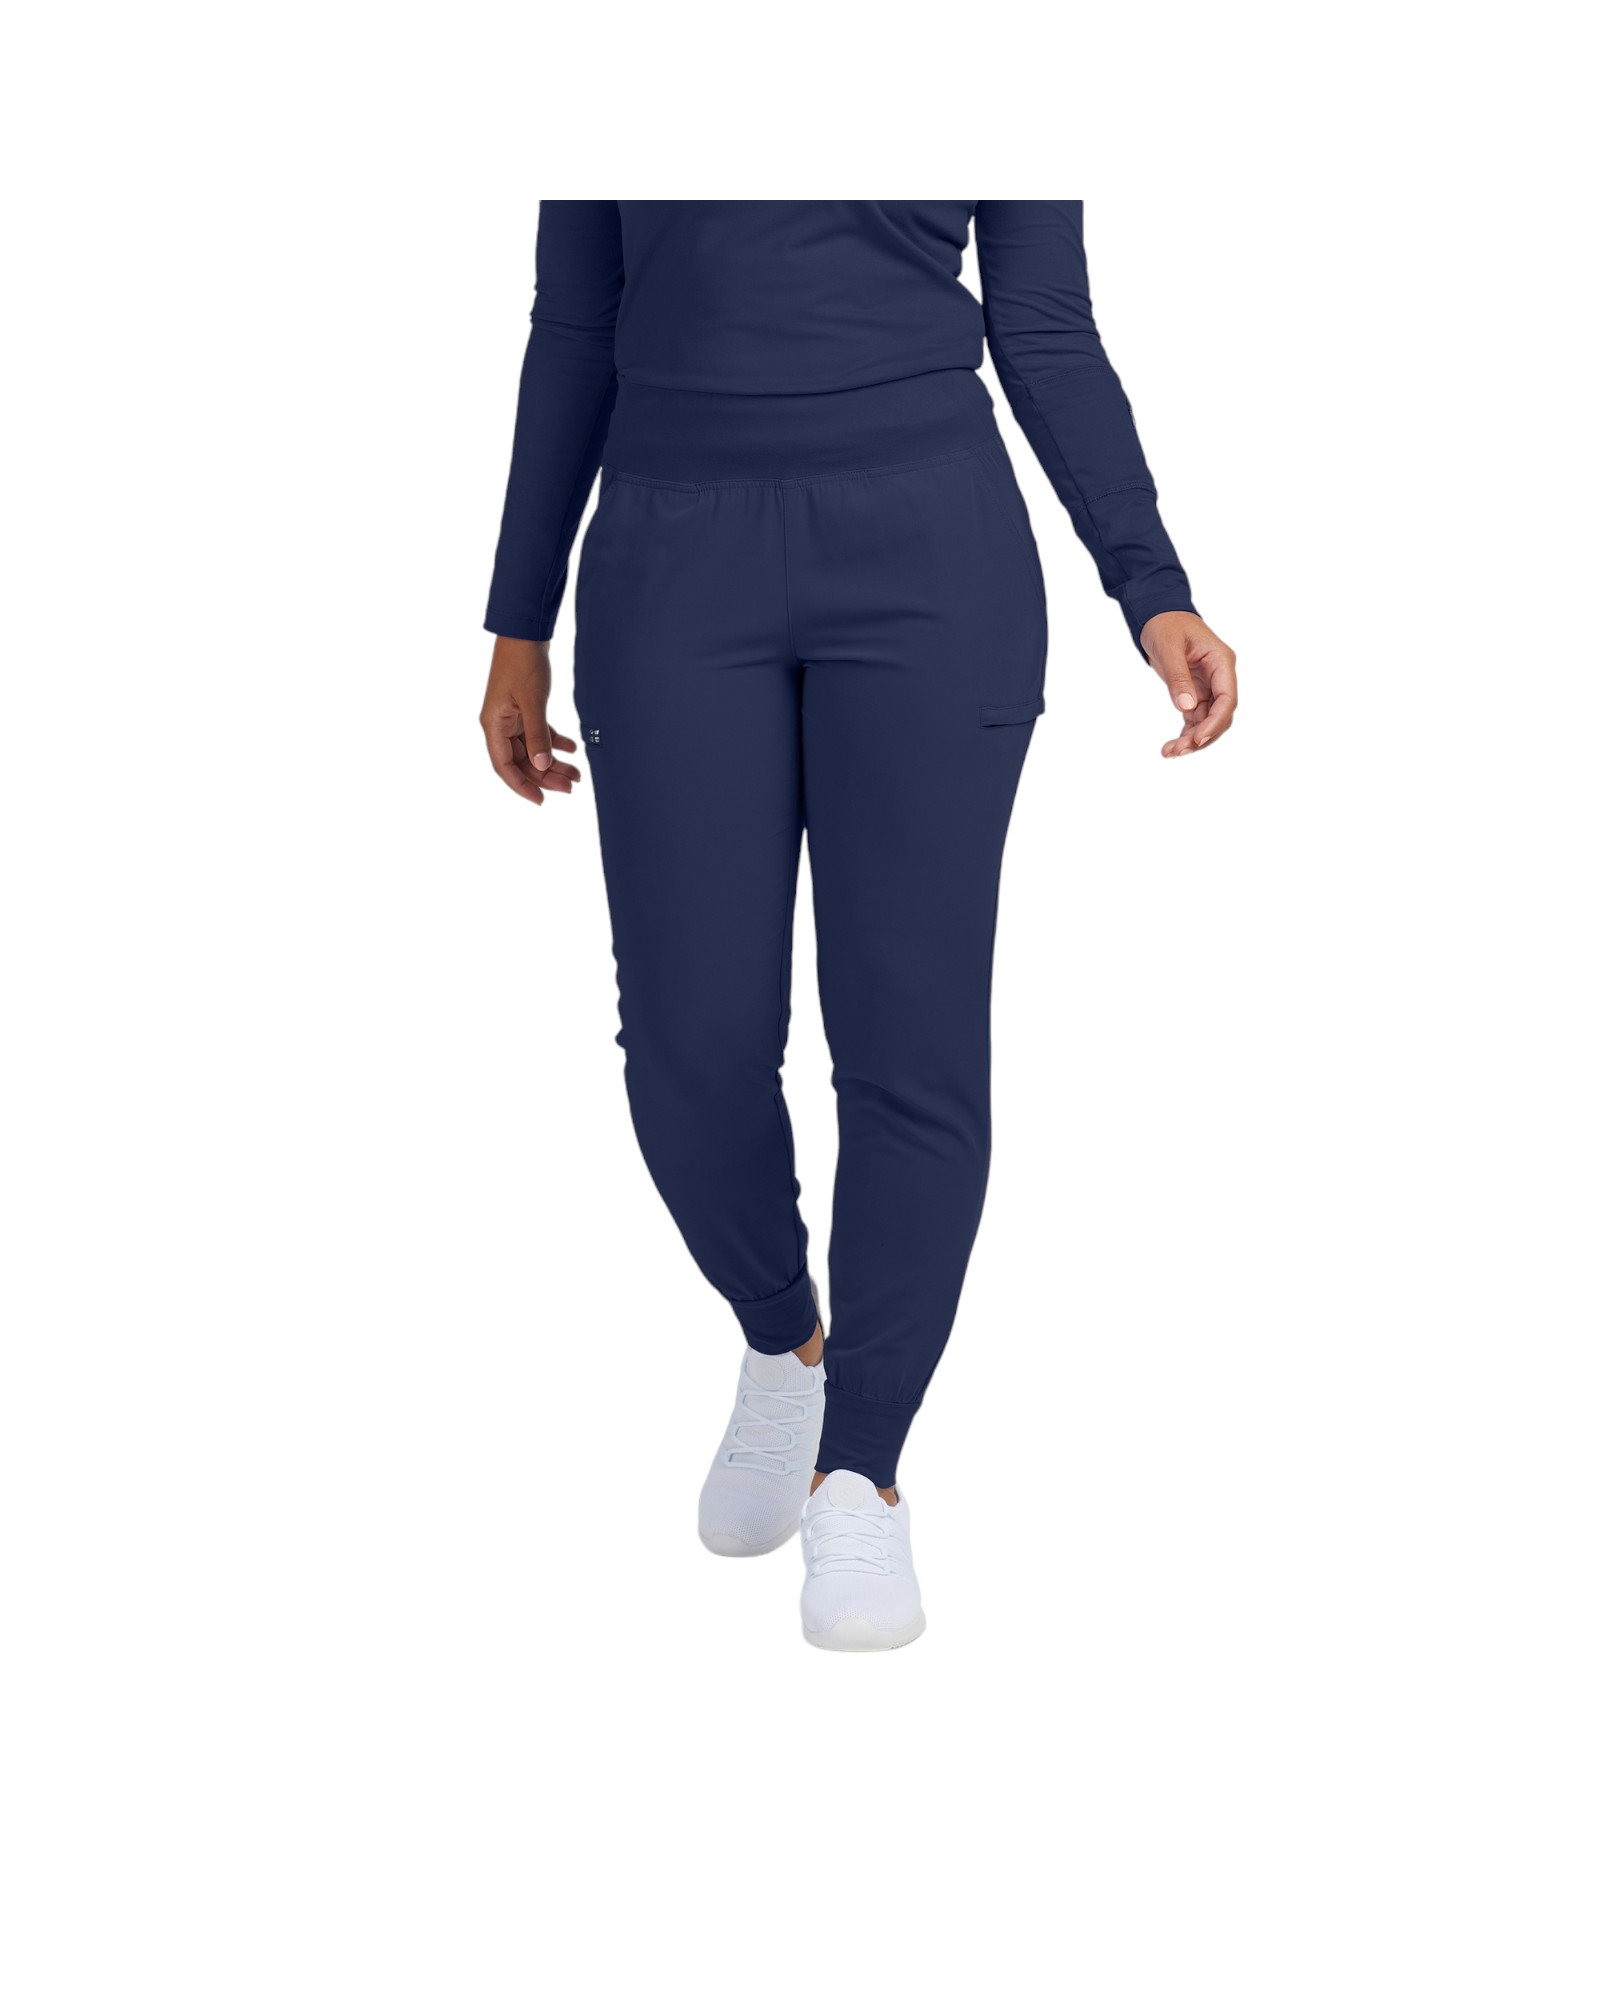 Pantalon jogger pour femme 6 poches White Cross CRFT #WB430 OS couleur Marine